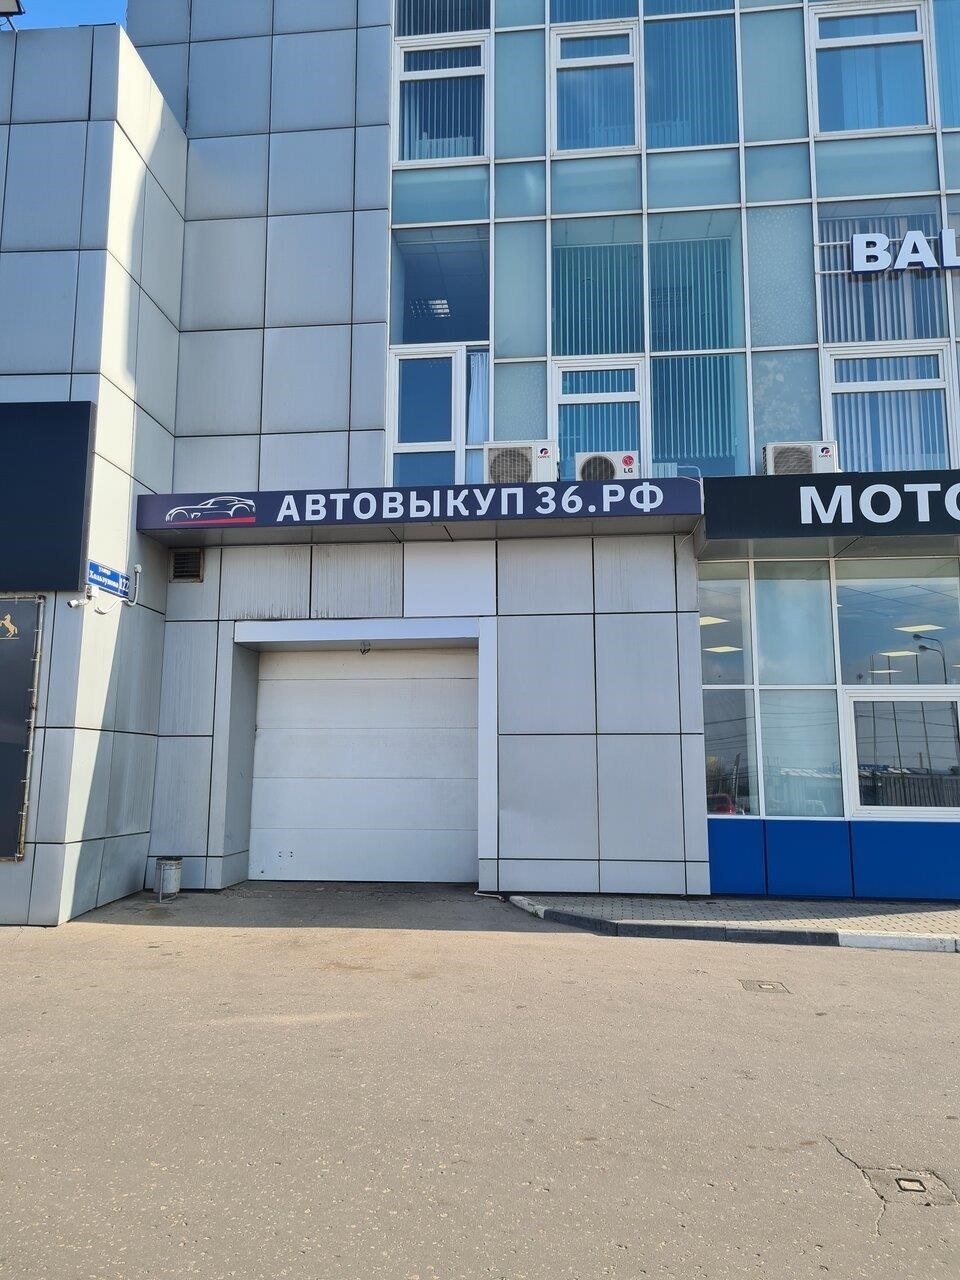 Автовыкуп 36 в Воронеже улица Хользунова, 122